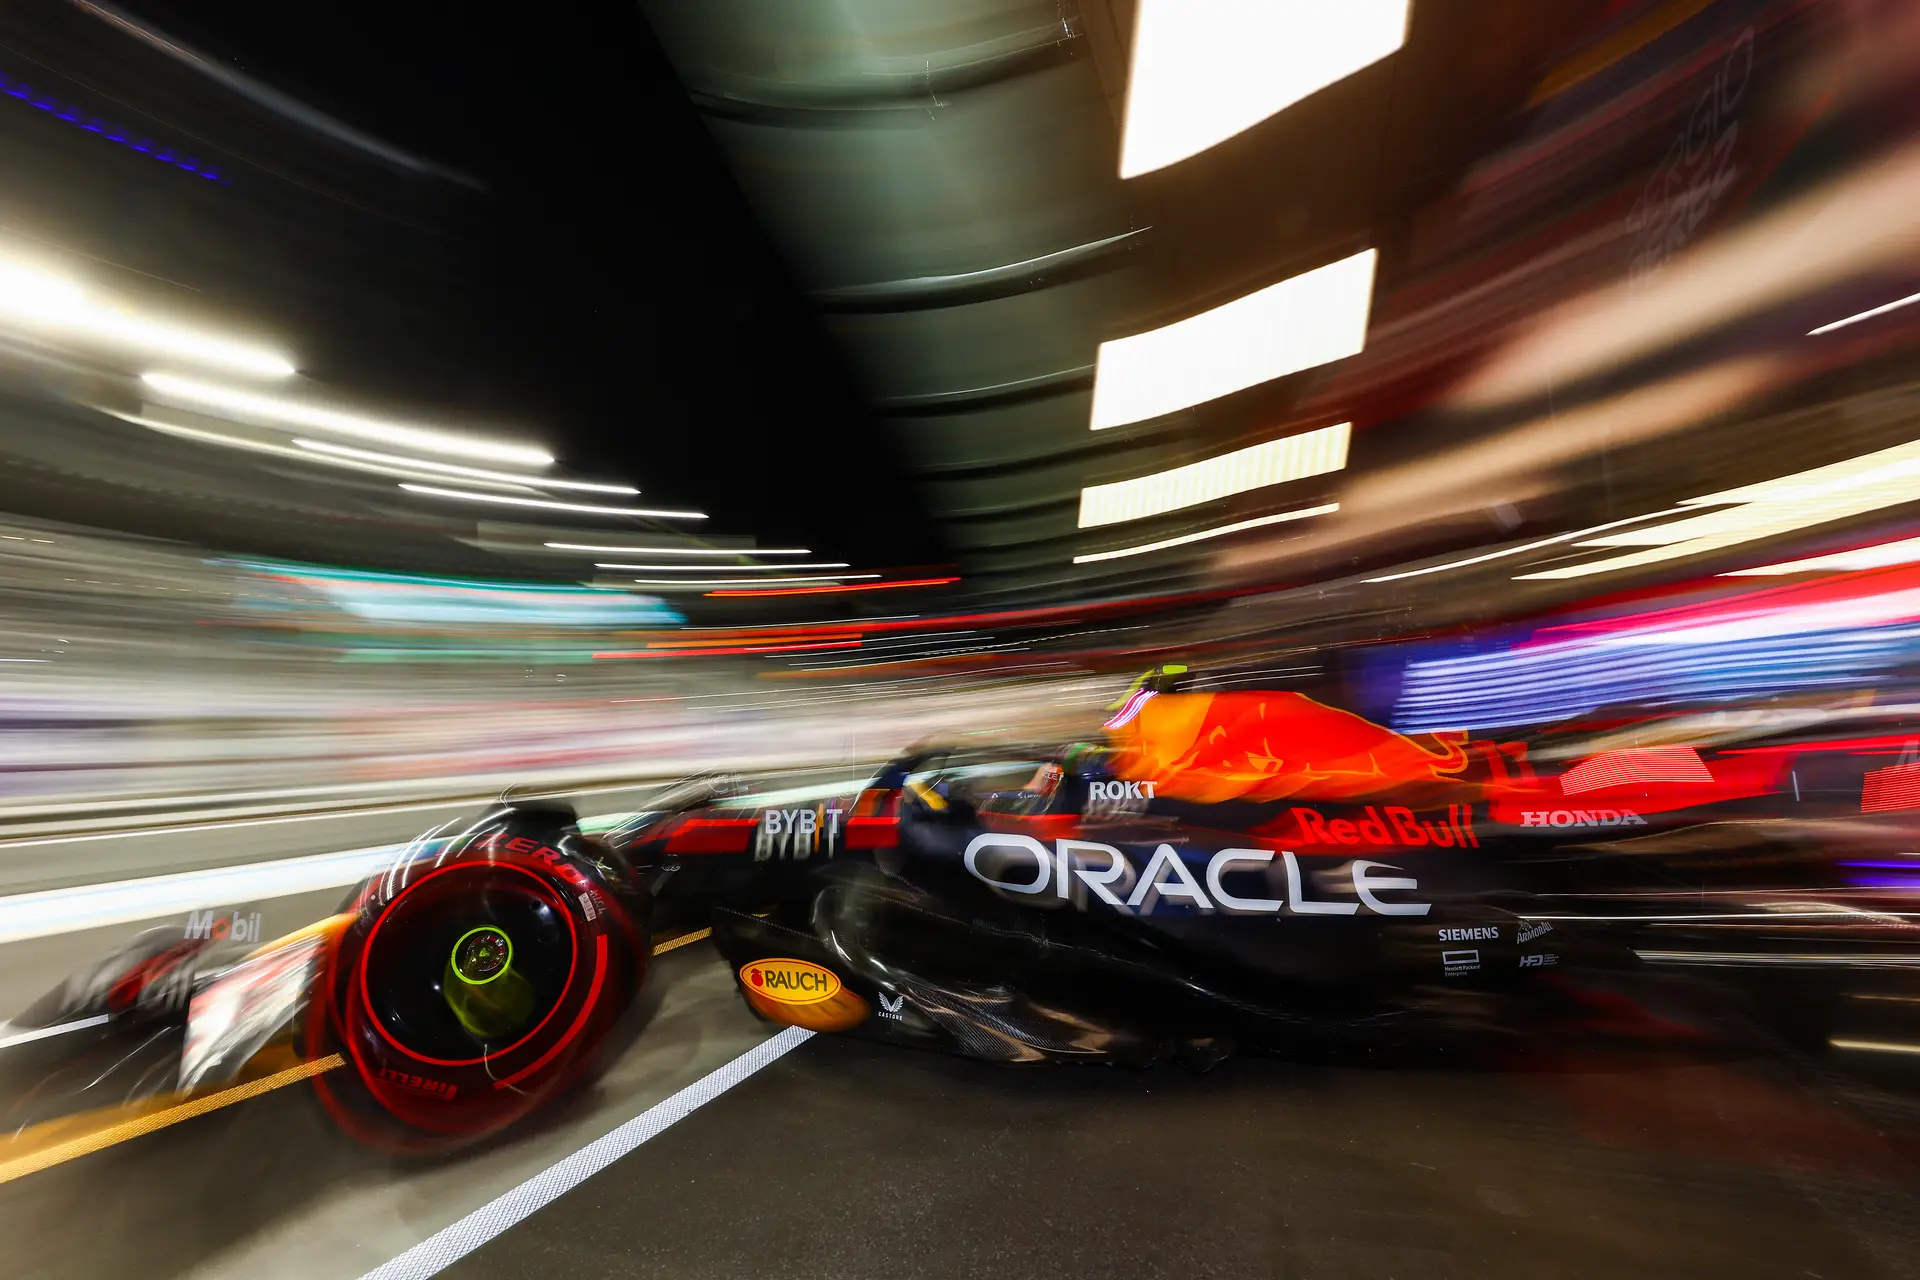 F1 anuncia calendário com 24 corridas para 2023 - Planeta Velocidade